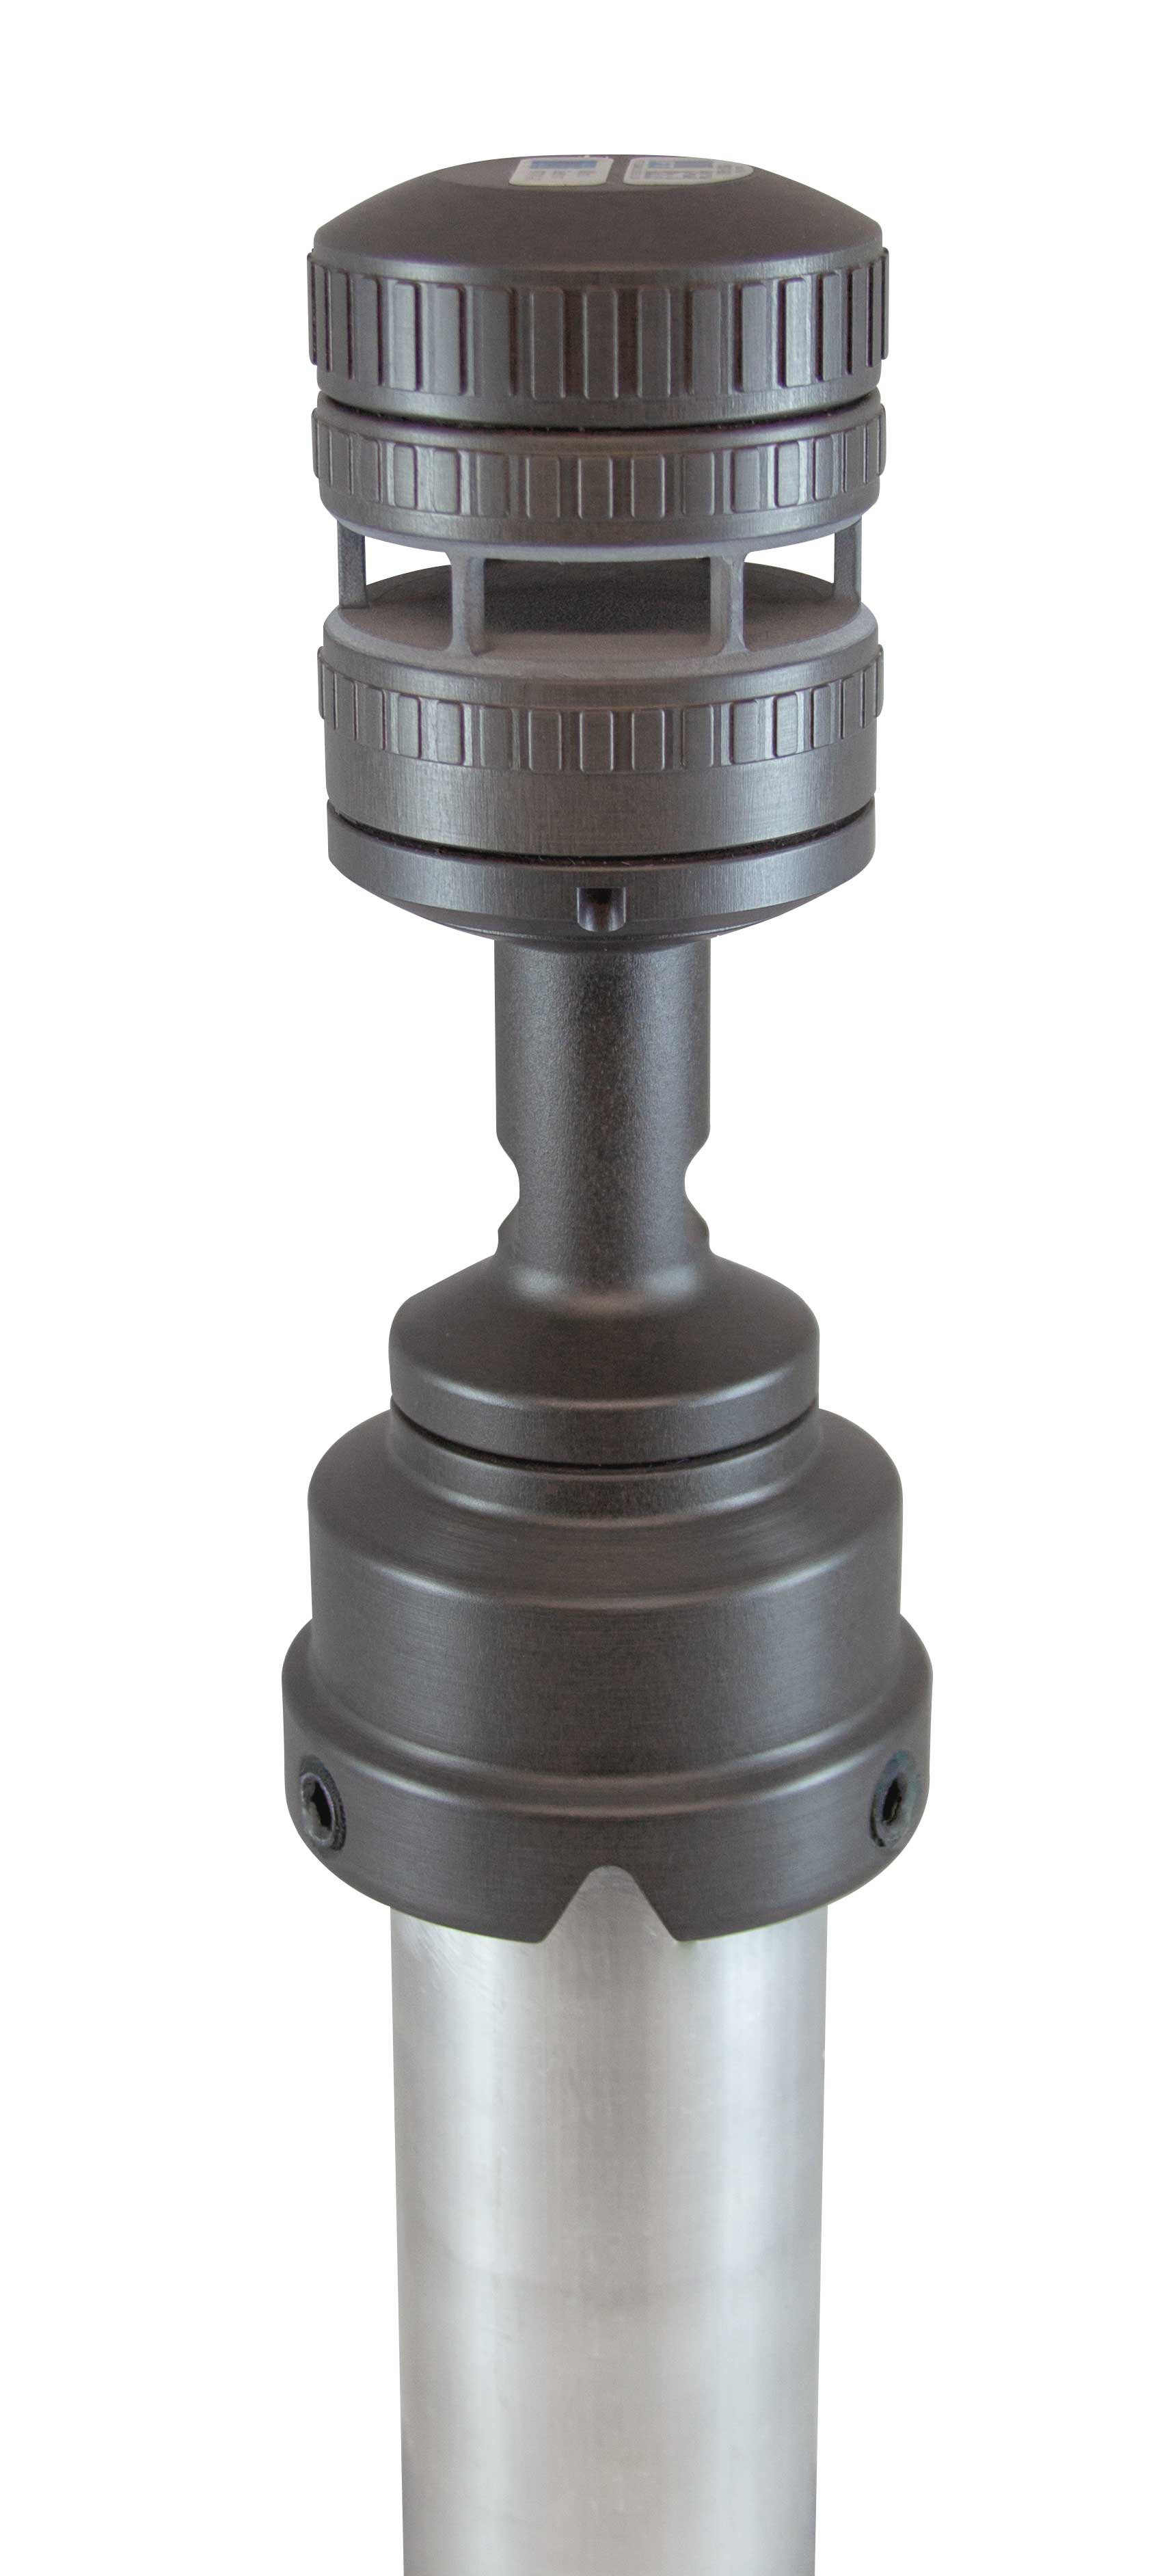 FT742-DM50 Direct Mount Wind Sensor on pipe